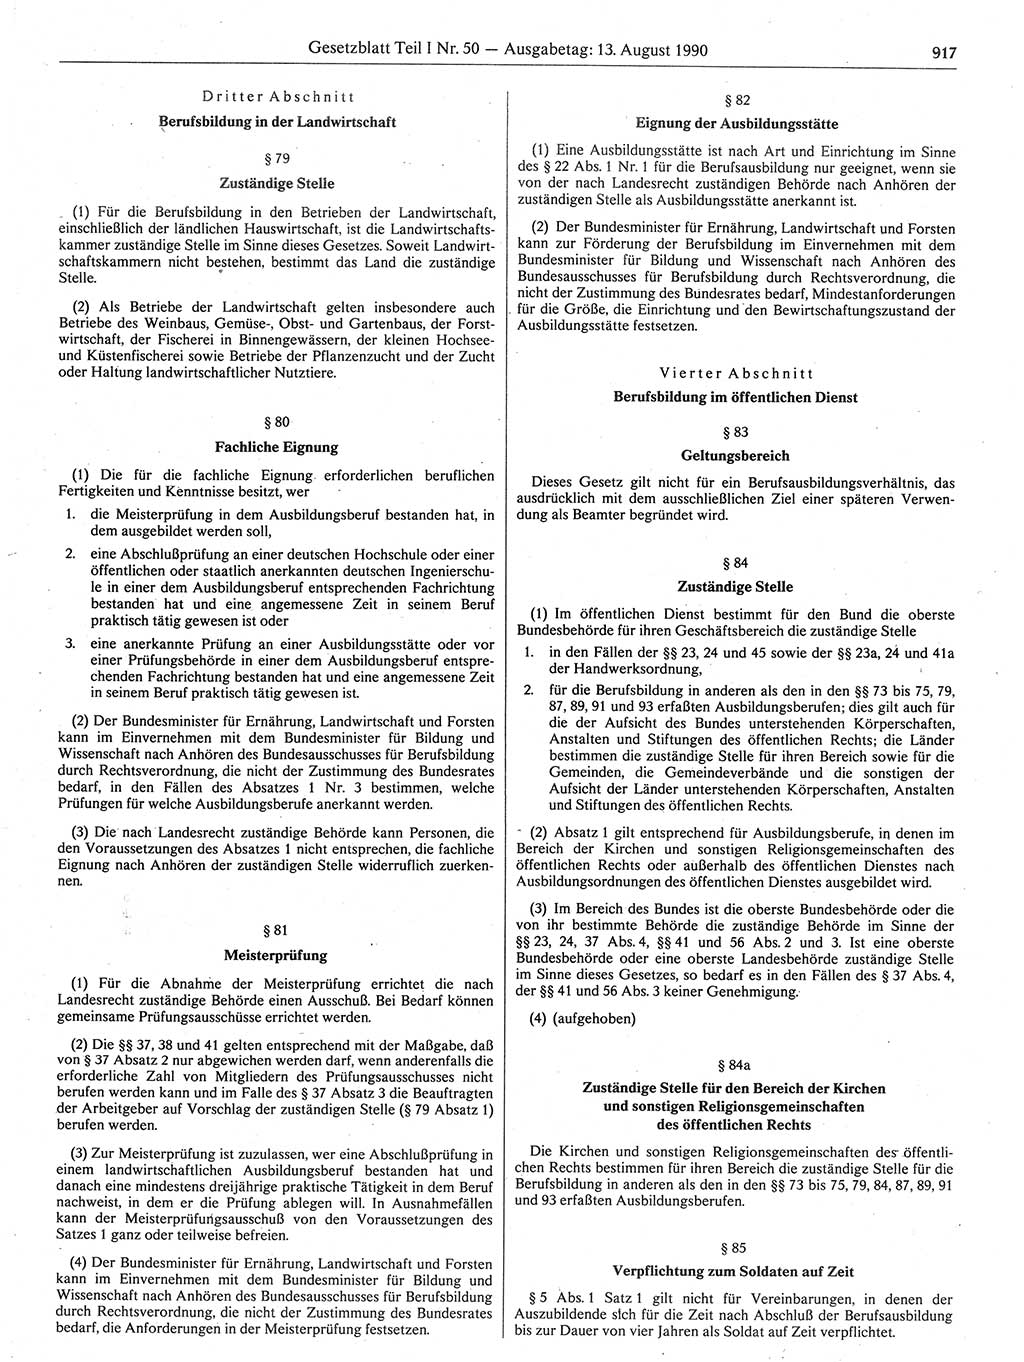 Gesetzblatt (GBl.) der Deutschen Demokratischen Republik (DDR) Teil Ⅰ 1990, Seite 917 (GBl. DDR Ⅰ 1990, S. 917)